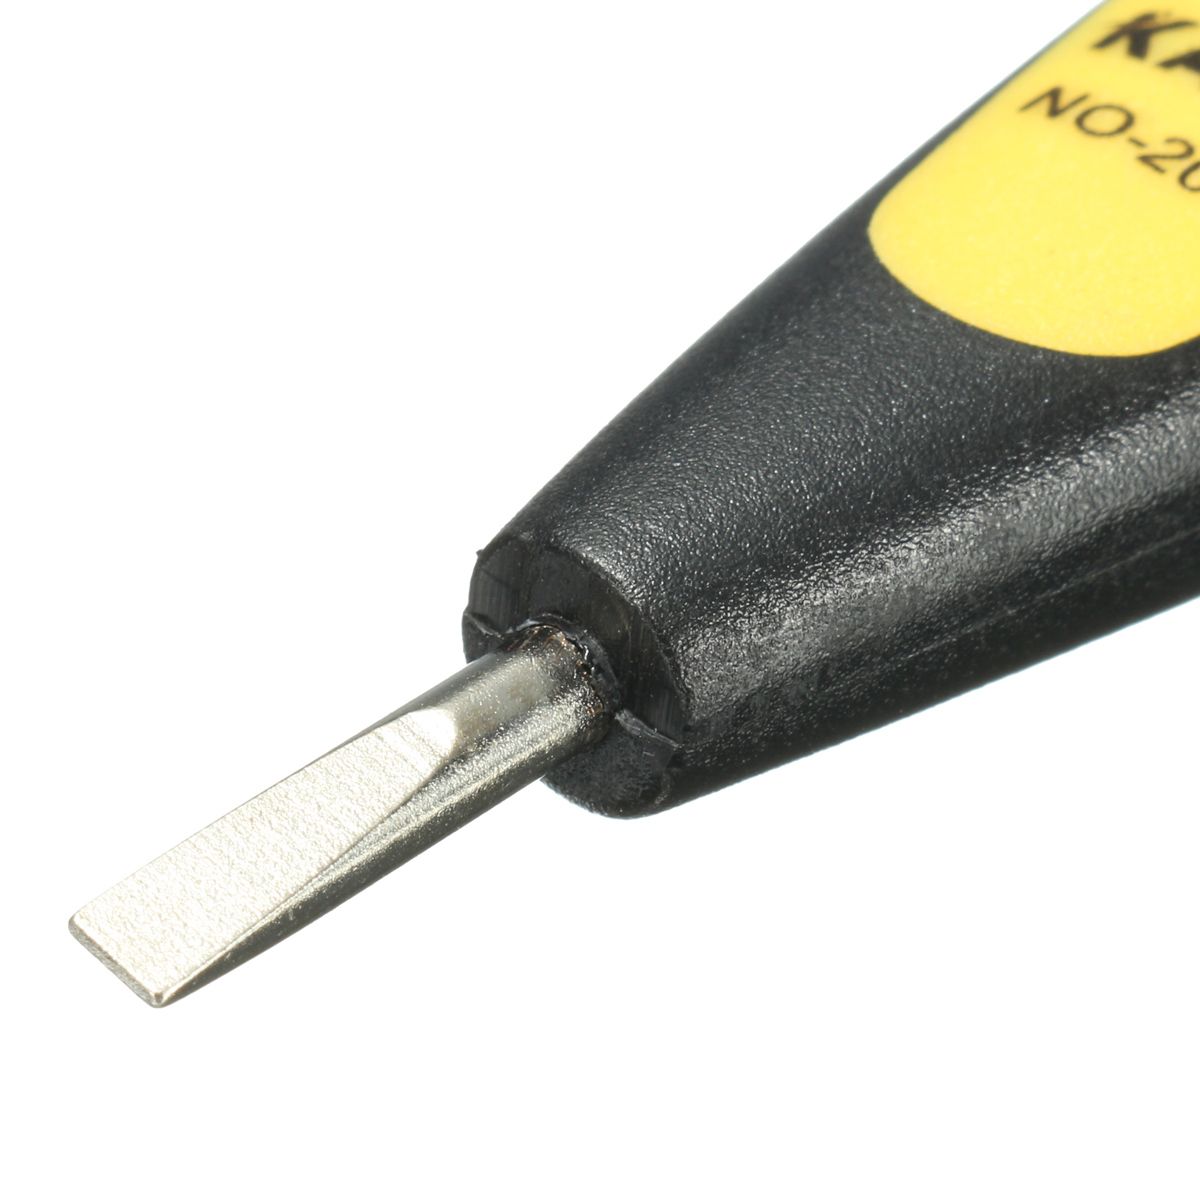 12-250V-AC-DC-Digital-Voltage-Detector-Tester-Pen-LED-Light-Electric-Sensor-1062626